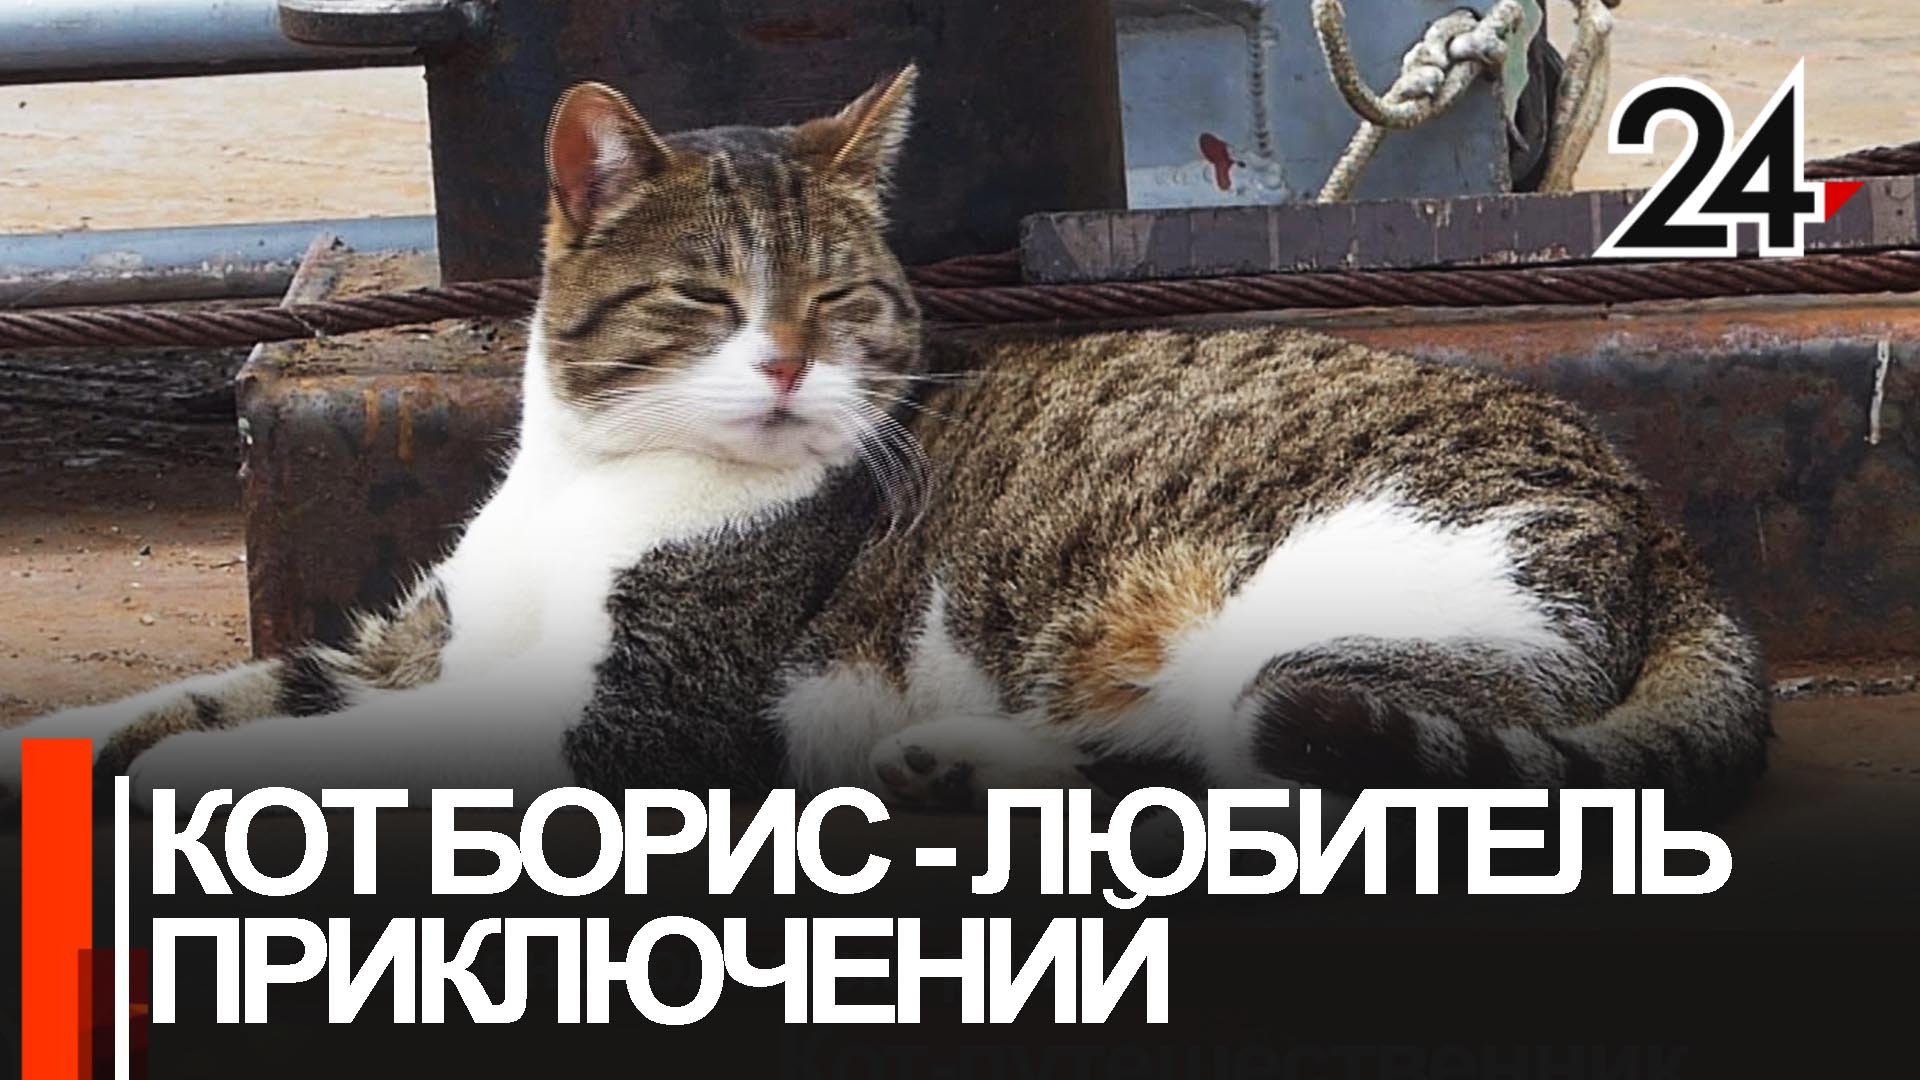 Кот, который гуляет сам по себе и путешествует на теплоходах, живет в Свияжске